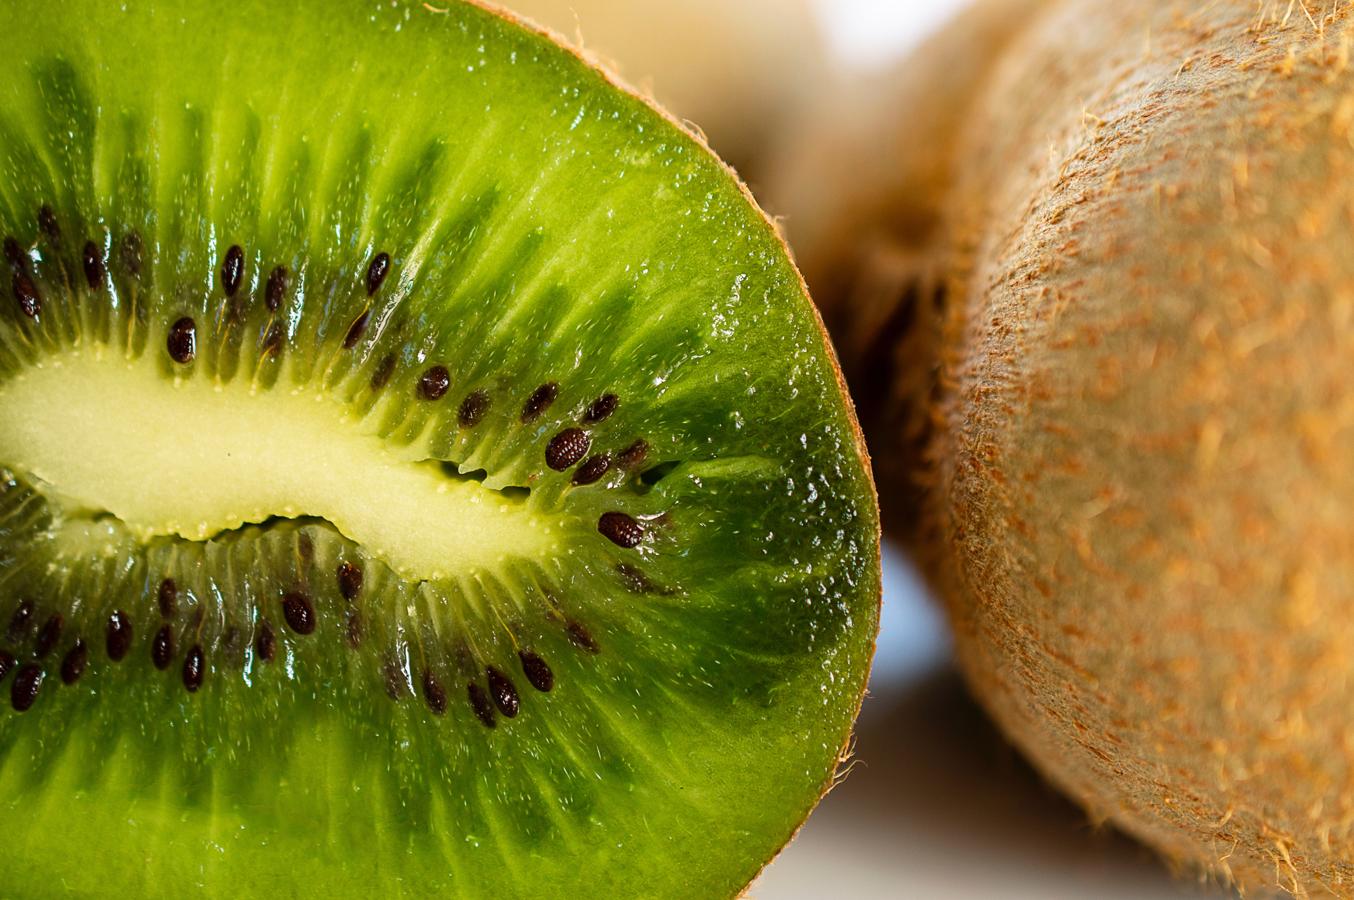 El wiki, con más vitamina C de lo que imaginas. Esta fruta se conserva a temperatura ambiente sin deshidratarse hasta 15 días. Madura en invierno y se come de octubre a marzo. El kiwi de pulpa verde puede aportar unos 59 mg de vitamina C por cada 100 gramos